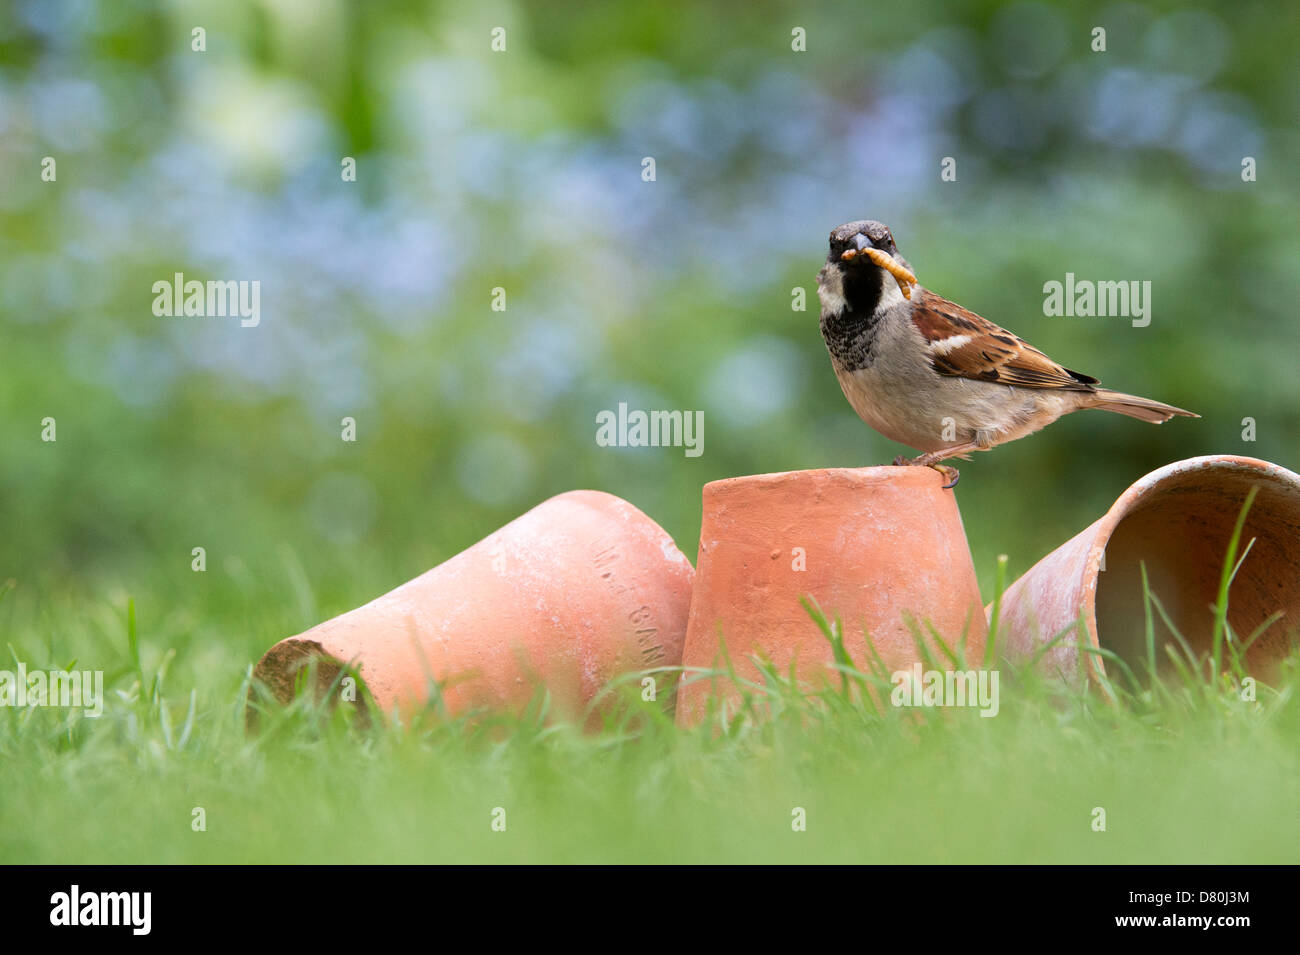 Passer domesticus. Maschio di casa passero sui vasi da fiori in erba con mealworms Foto Stock